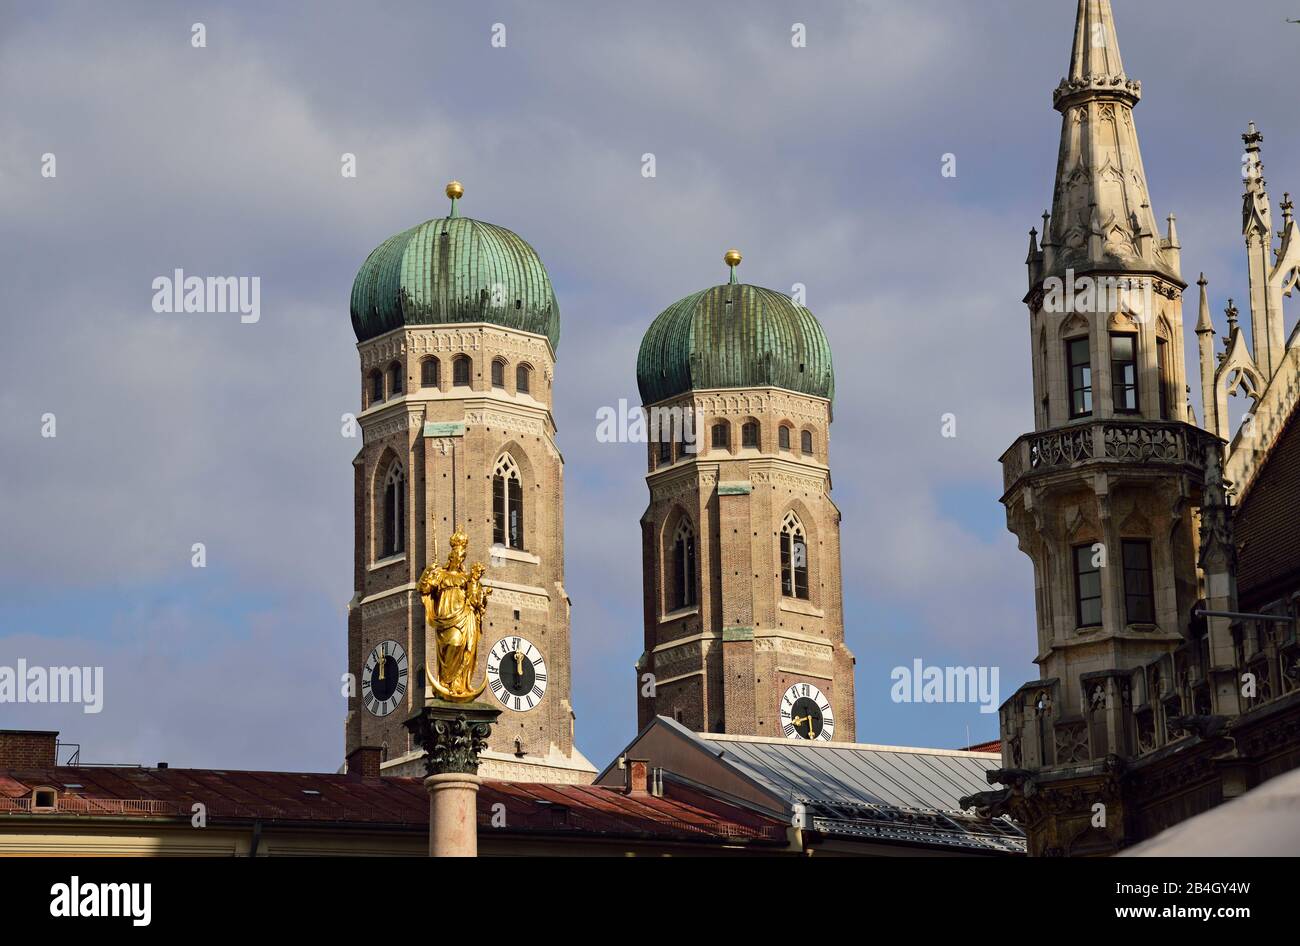 Europa, Alemania, Baviera, Ciudad de Munich, Marienplatz, Nuevo Ayuntamiento de estilo neogótico, construido de 1867 a 1908, el juego de la campana y la figura en la torre del ayuntamiento, las torres de la Frauenkirche Foto de stock